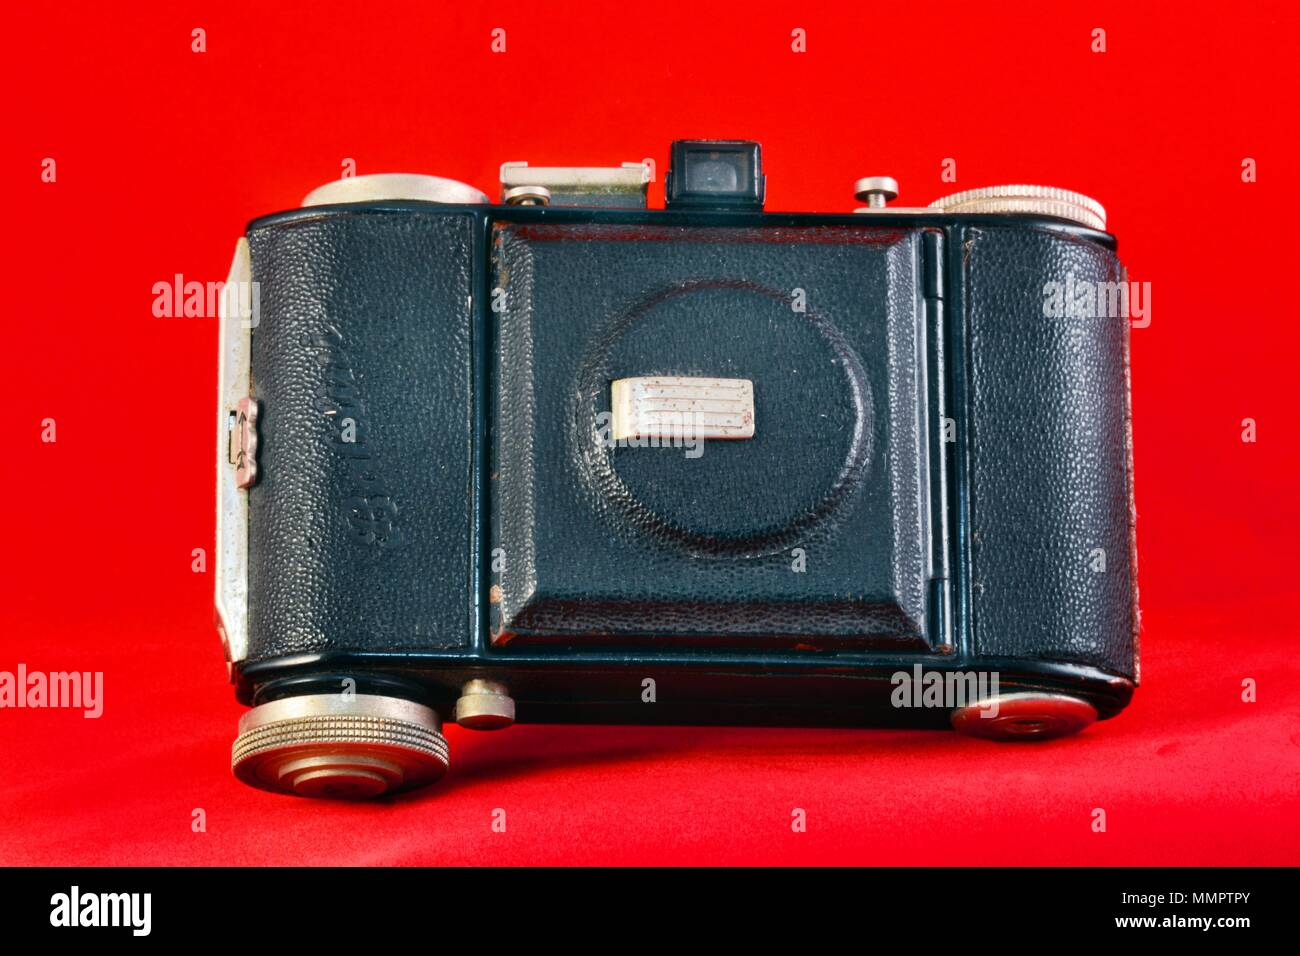 Baldina war eine Reihe von Kameras, die in Deutschland hergestellt von Balda Werke ab Mitte der 1930er Jahre bis Mitte der 1950er Jahre. Unter vielen, vielen verschiedenen Bezeichnungen vermarktet Stockfoto